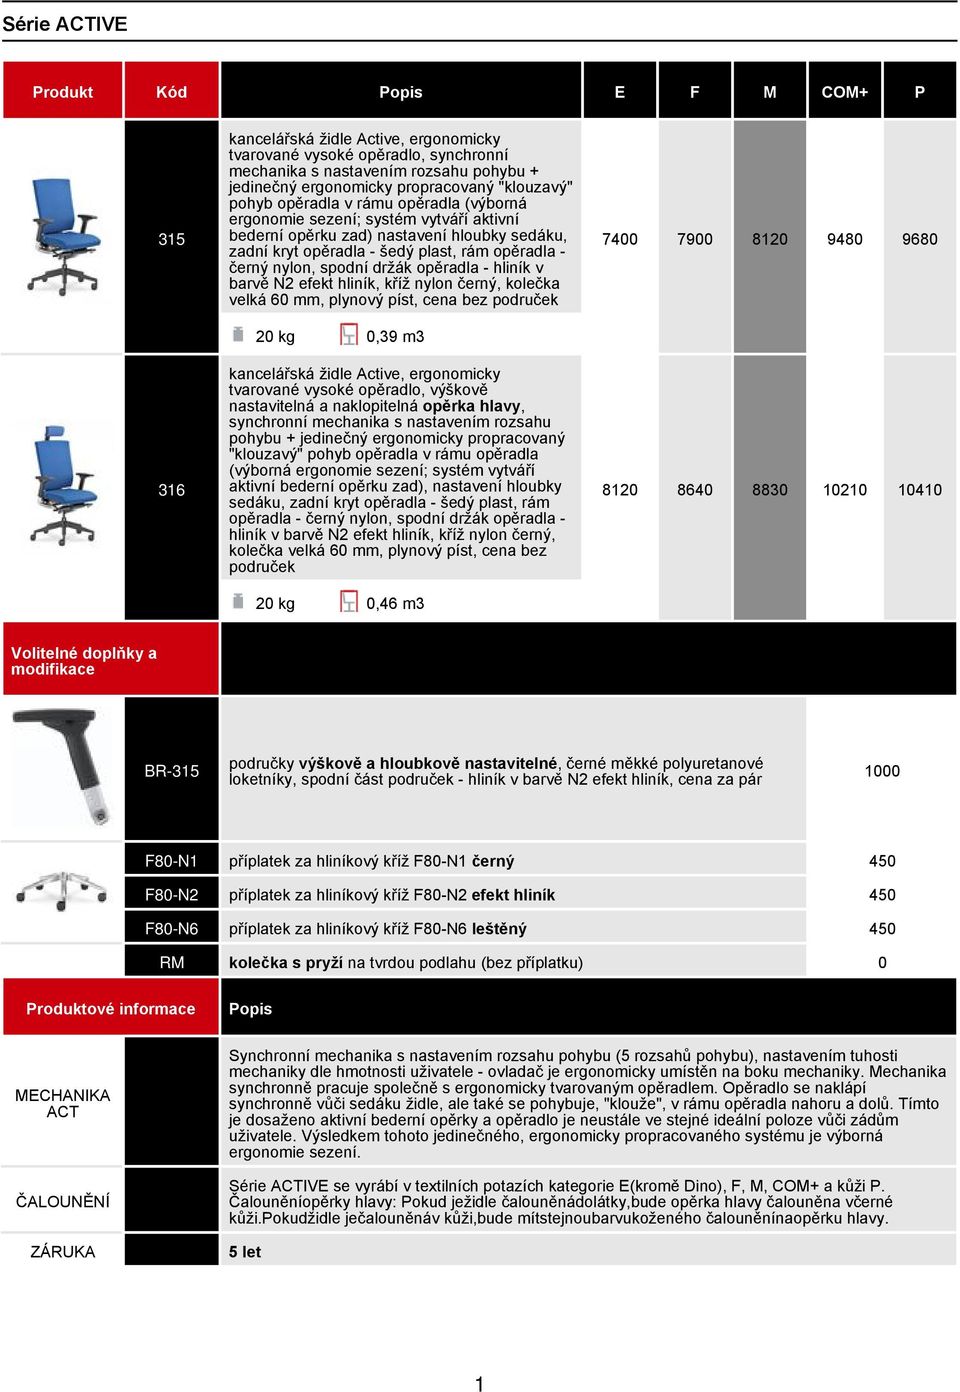 černý nylon, spodní držák opěradla - hliník v barvě N2 efekt hliník, kříž nylon černý, kolečka velká 60 mm, plynový píst, cena bez područek 20 kg 0,39 m3 kancelářská židle Active, ergonomicky